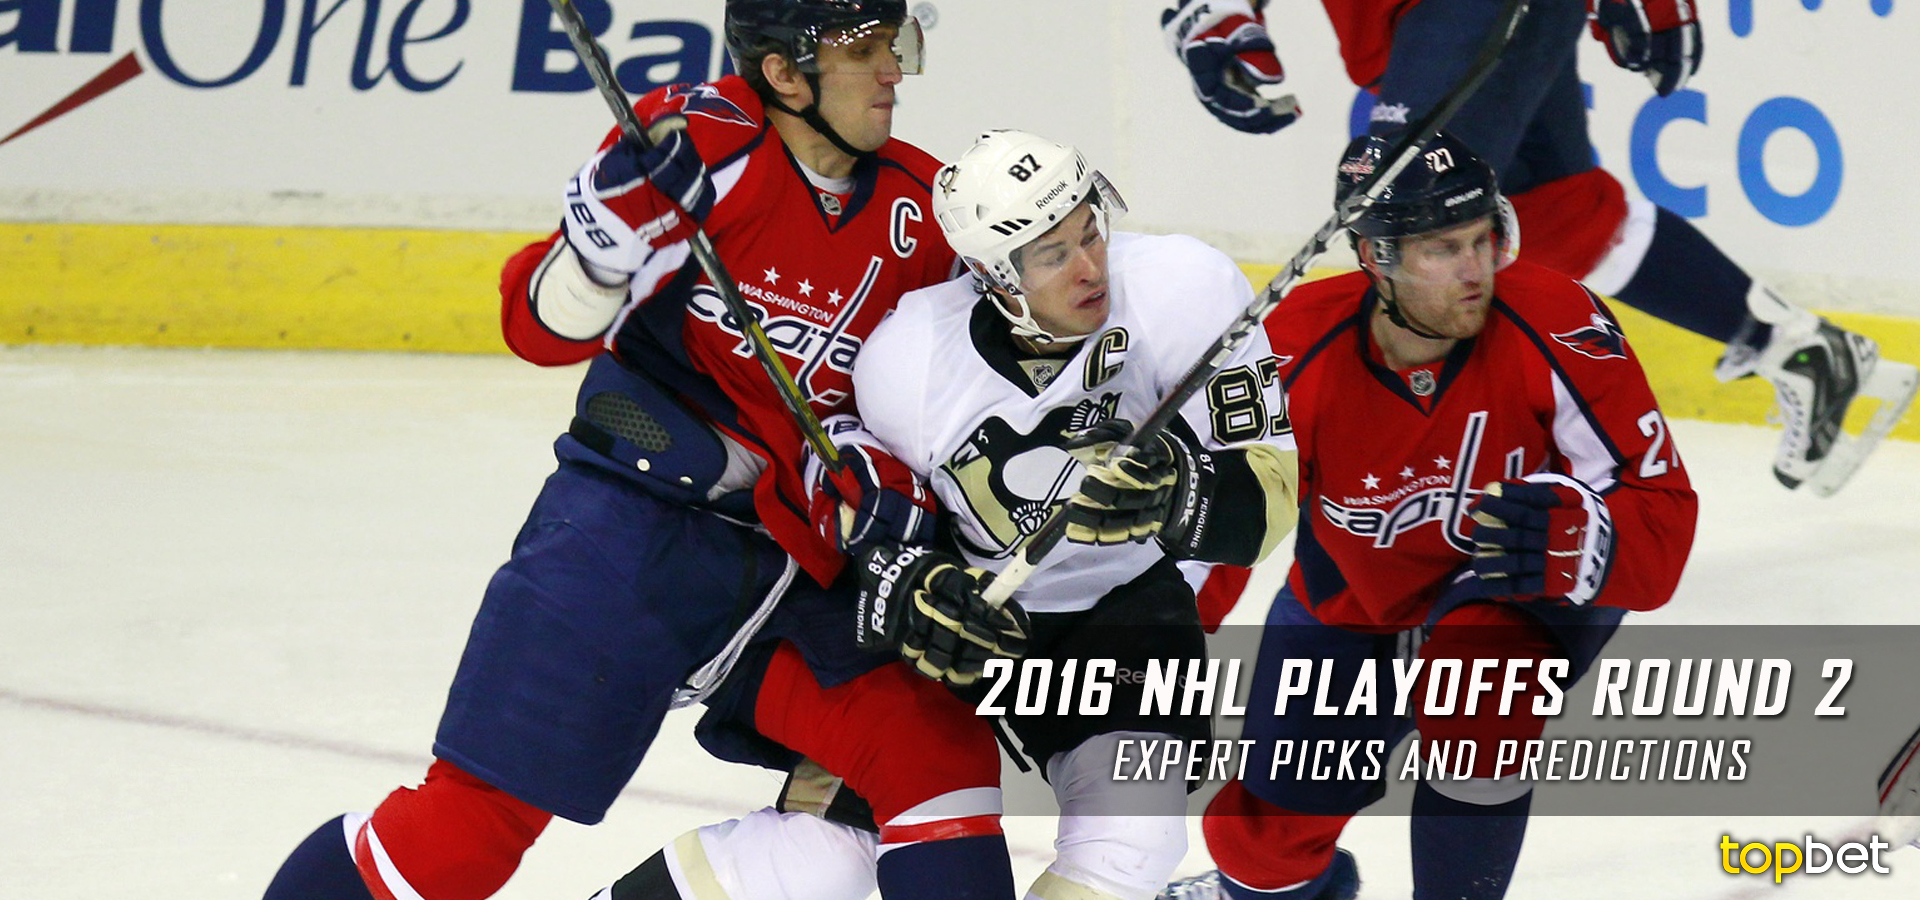 2016 NHL Playoffs Round 2 Expert Picks